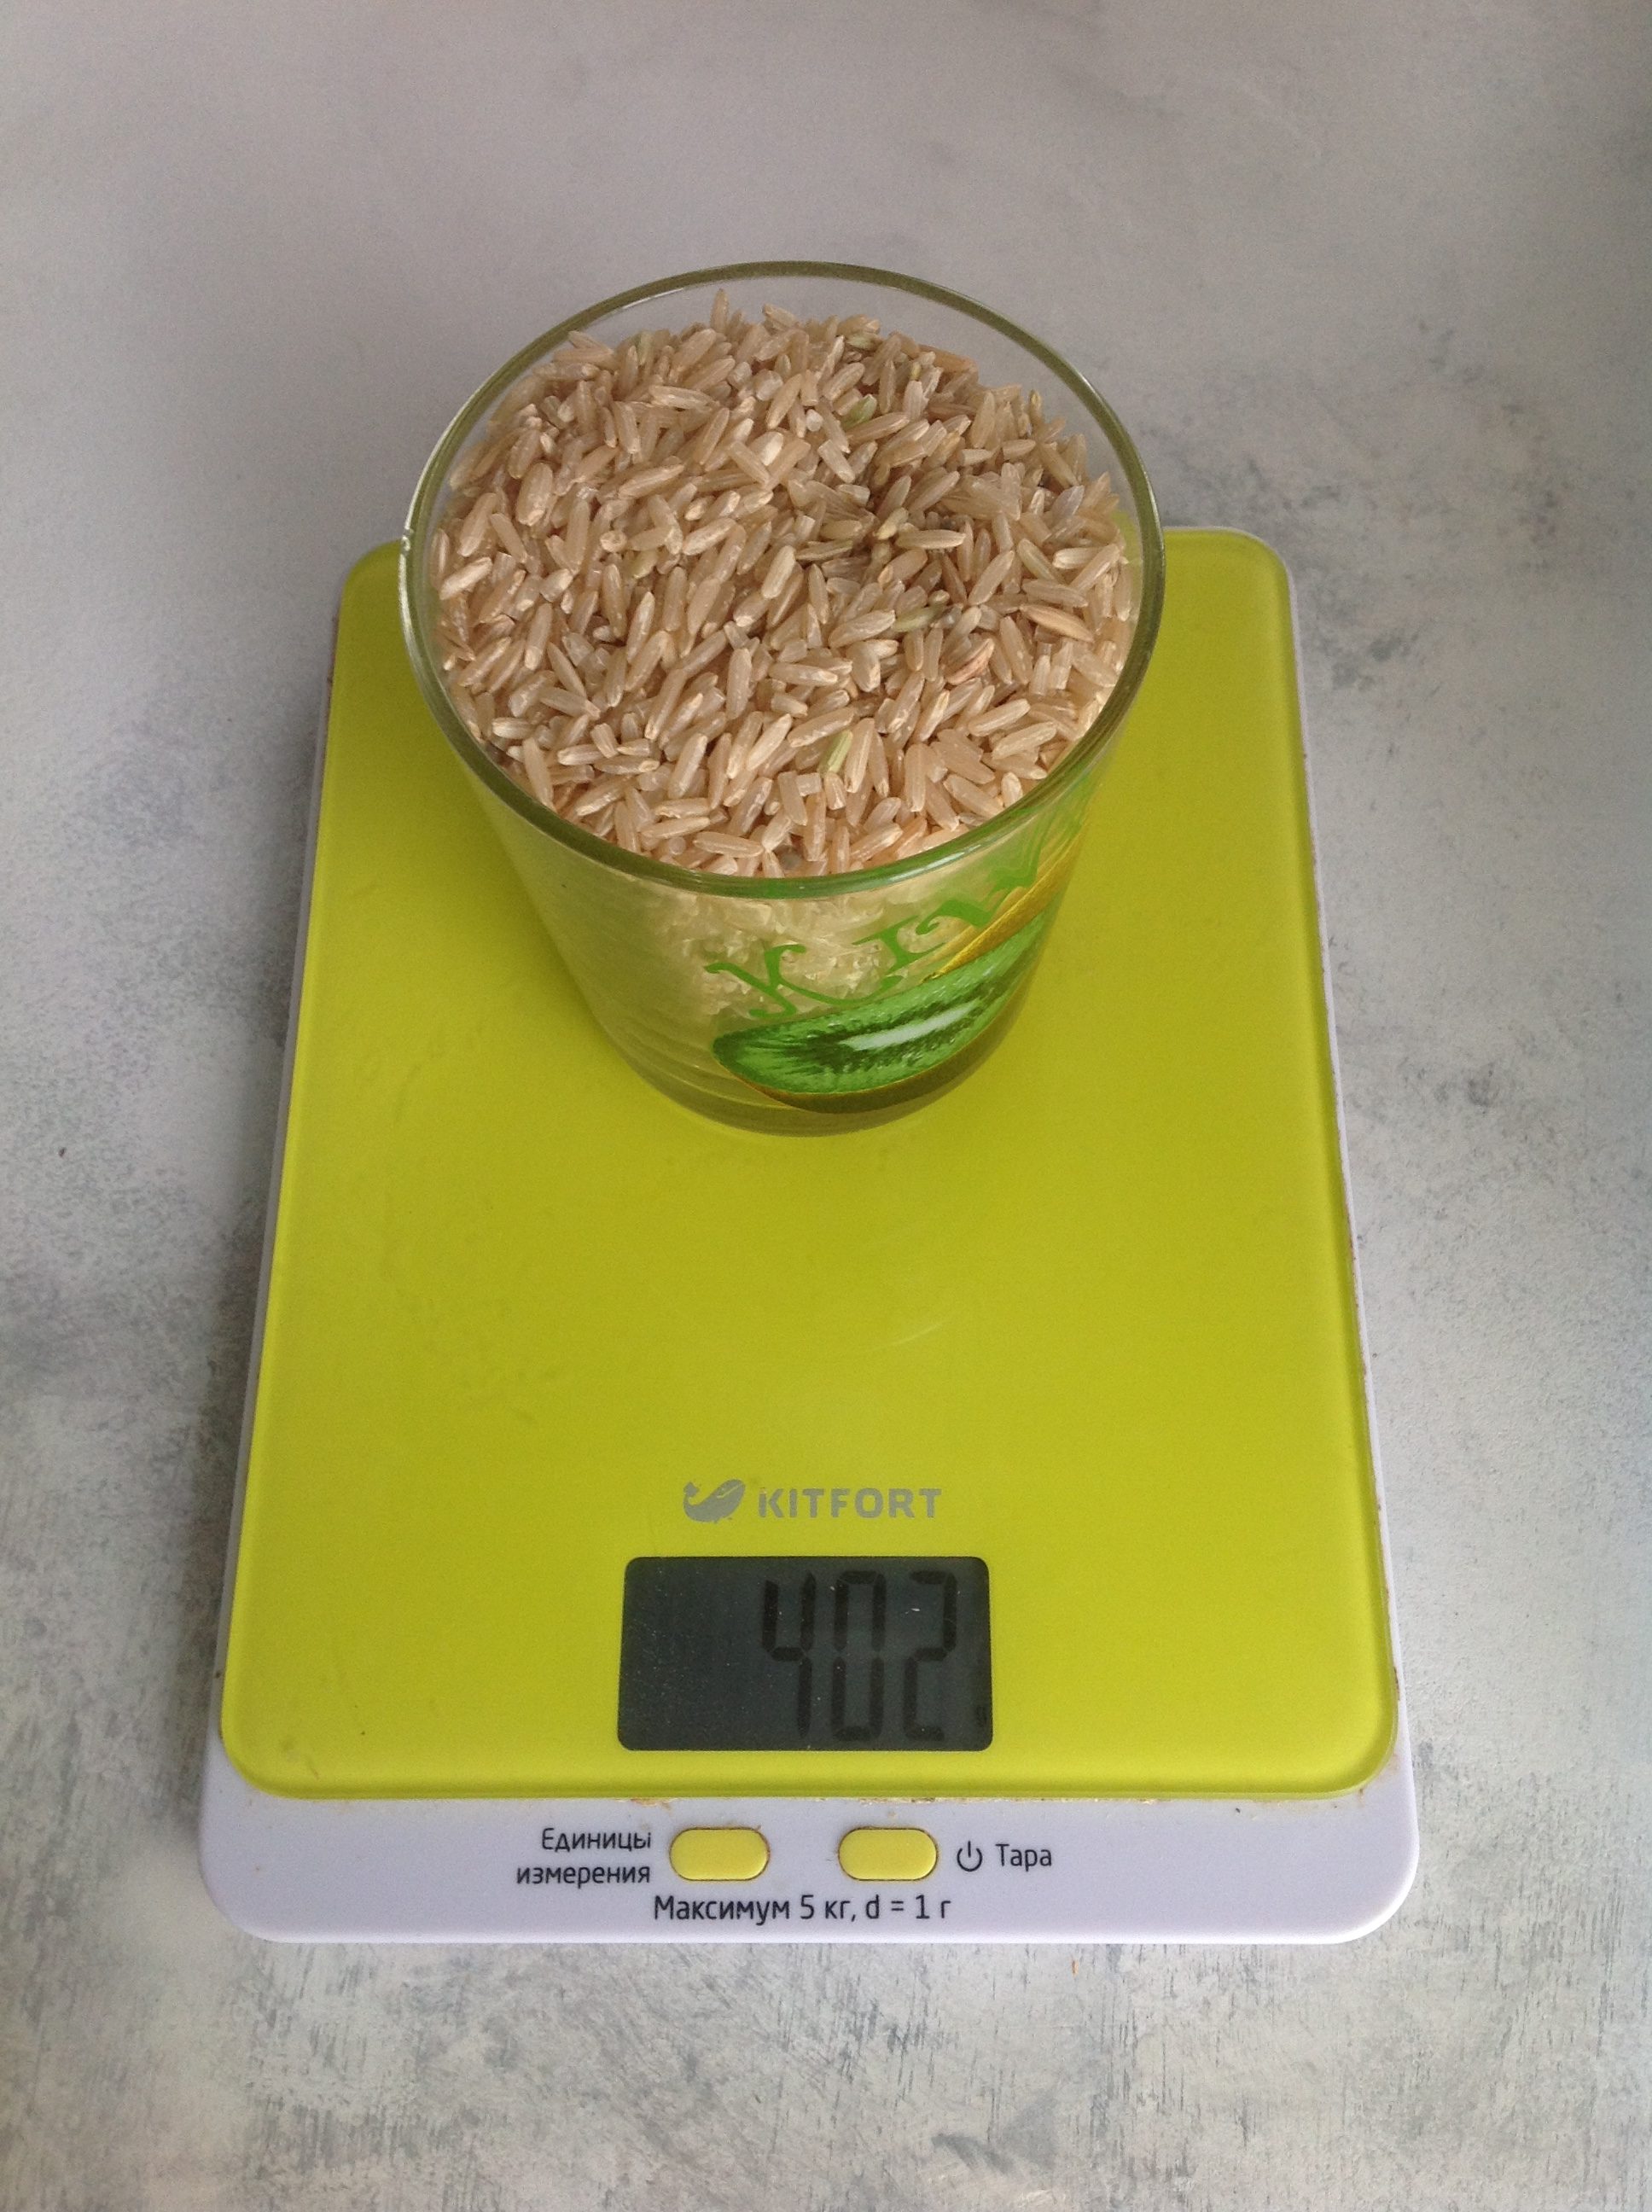 Колко тежи кафявият сух ориз в чаша от 250 мл?